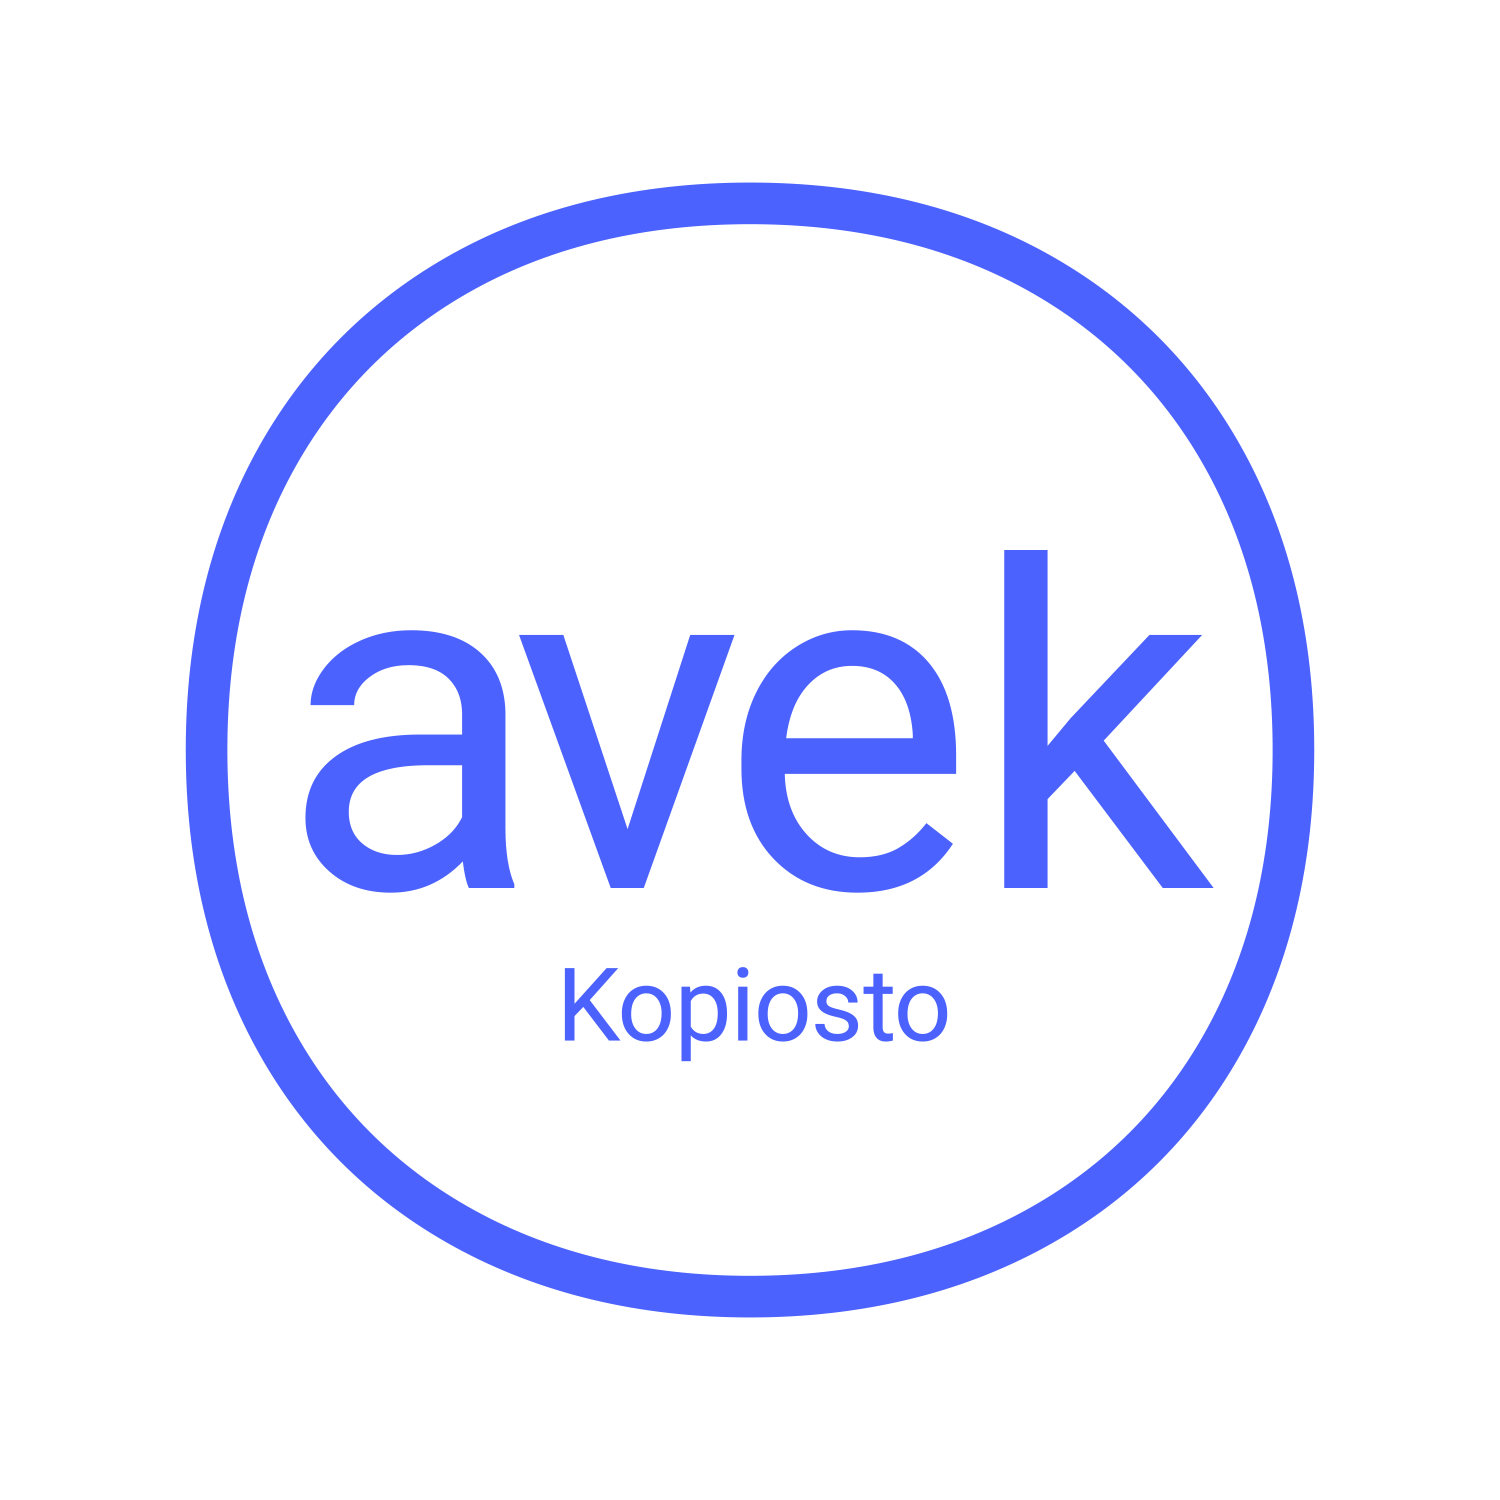 AVEKin logo